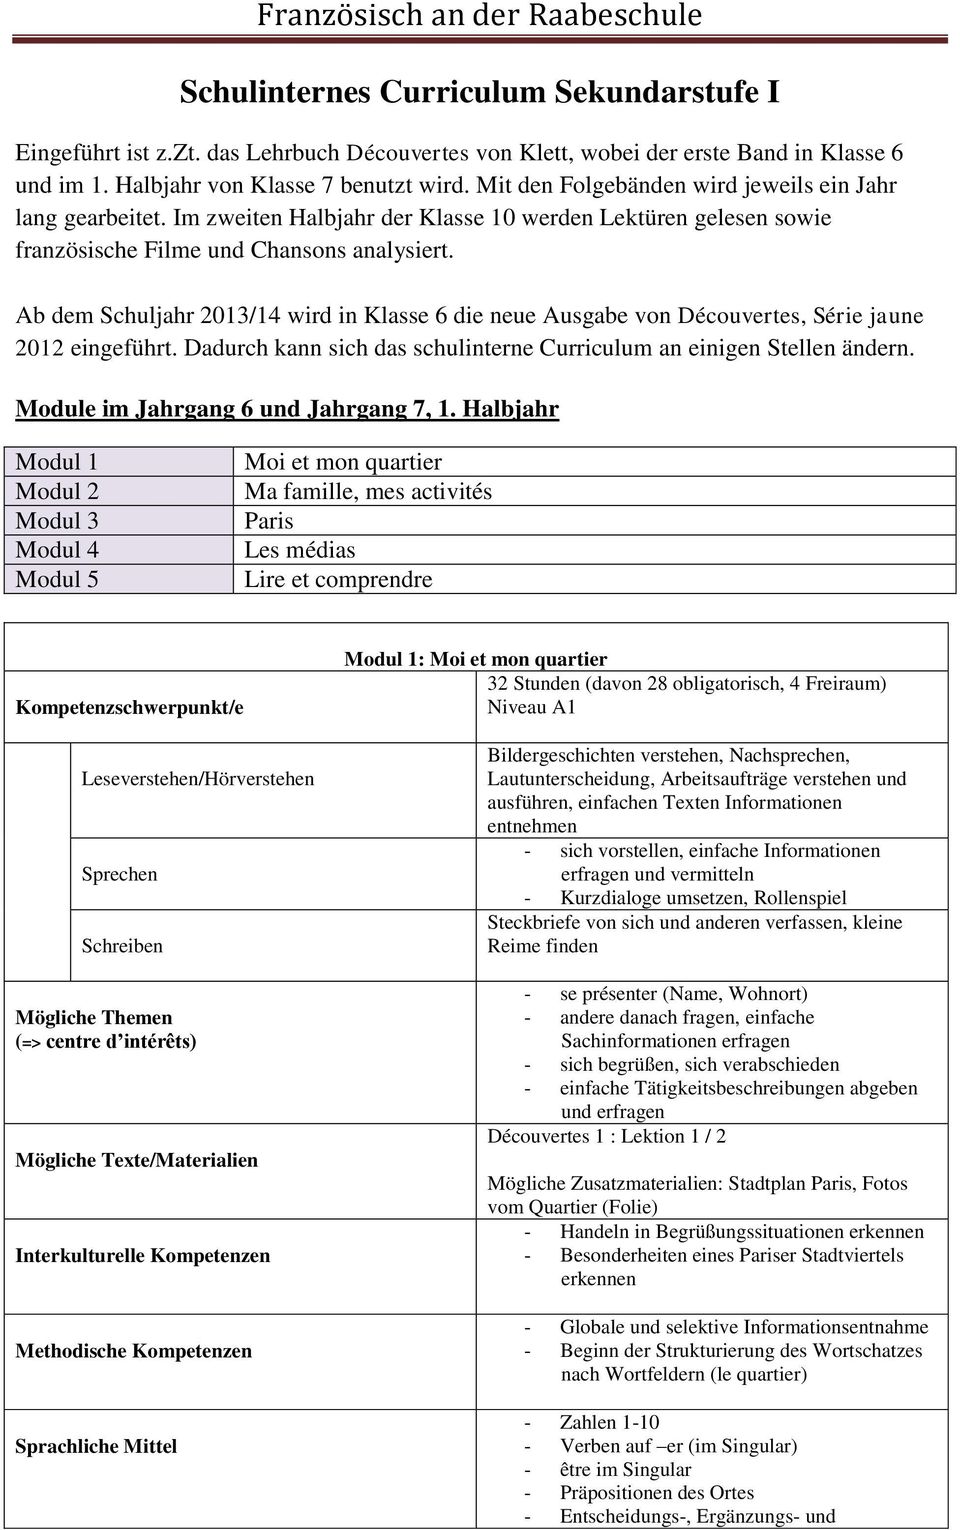 Ab dem Schuljahr 2013/14 wird in Klasse 6 die neue Ausgabe von Découvertes, Série jaune 2012 eingeführt. Dadurch kann sich das schulinterne Curriculum an einigen Stellen ändern.